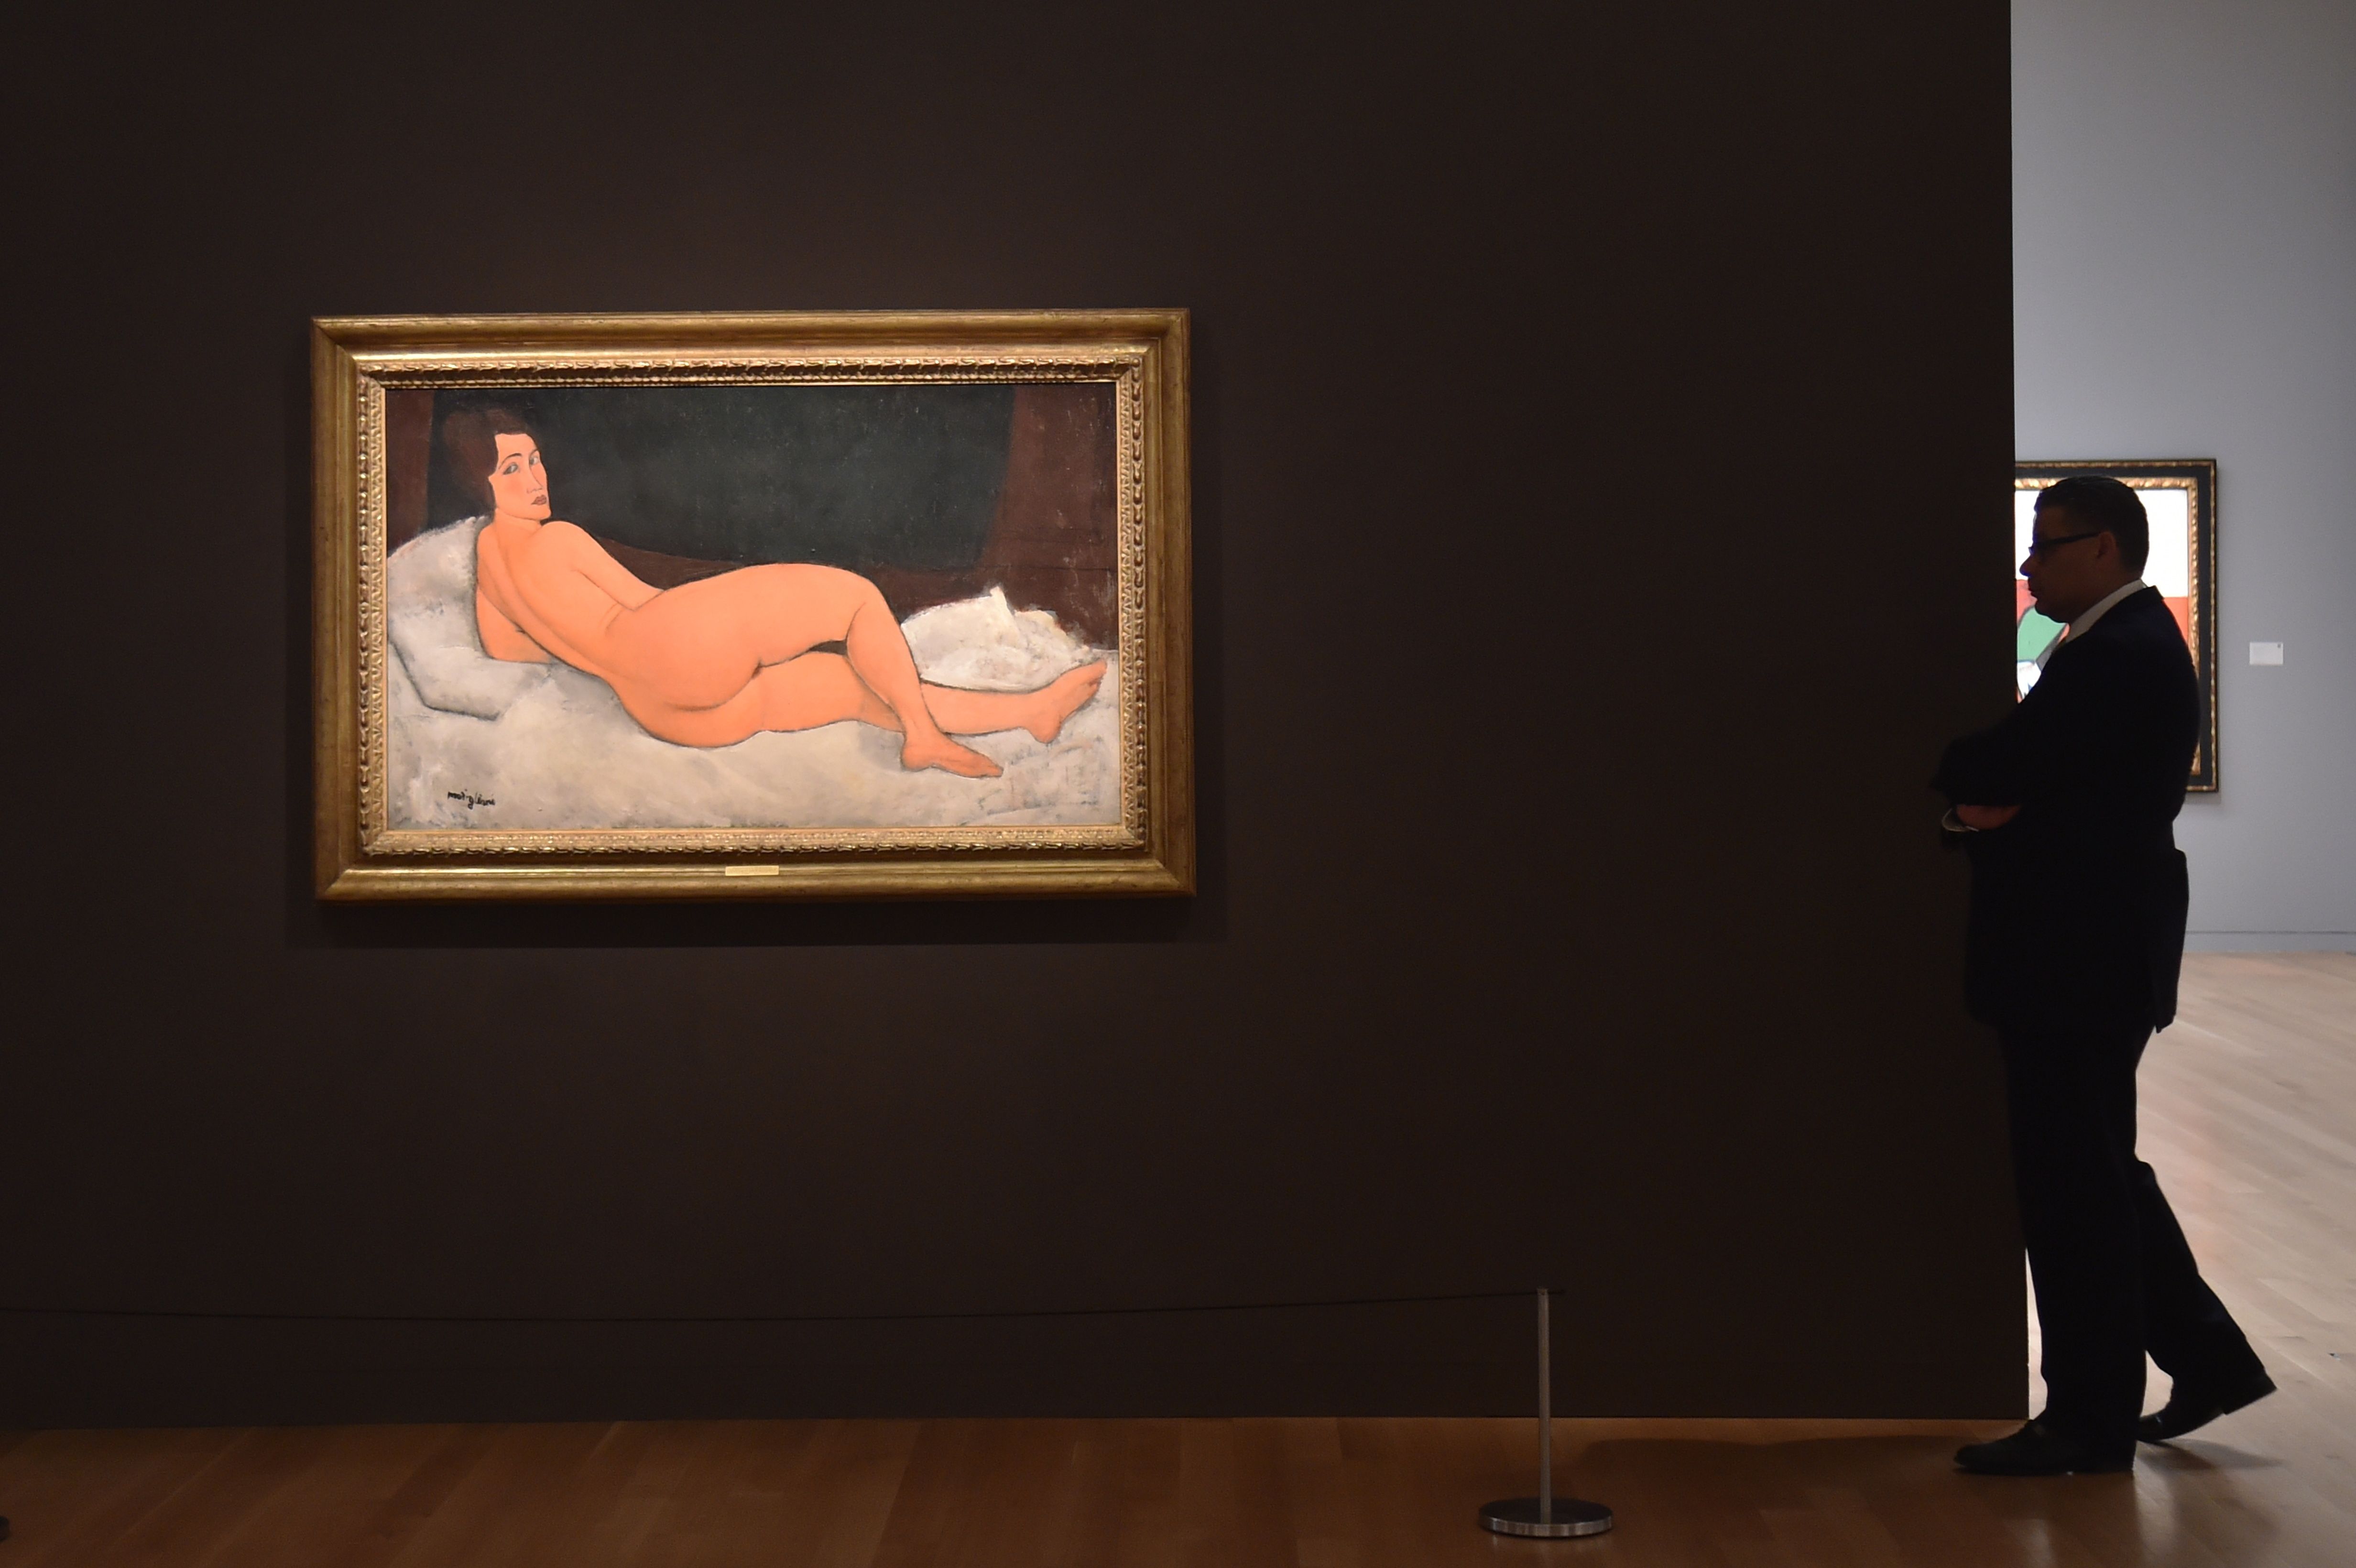 لوحة "امرأة عارية نائمة" لموديلياني